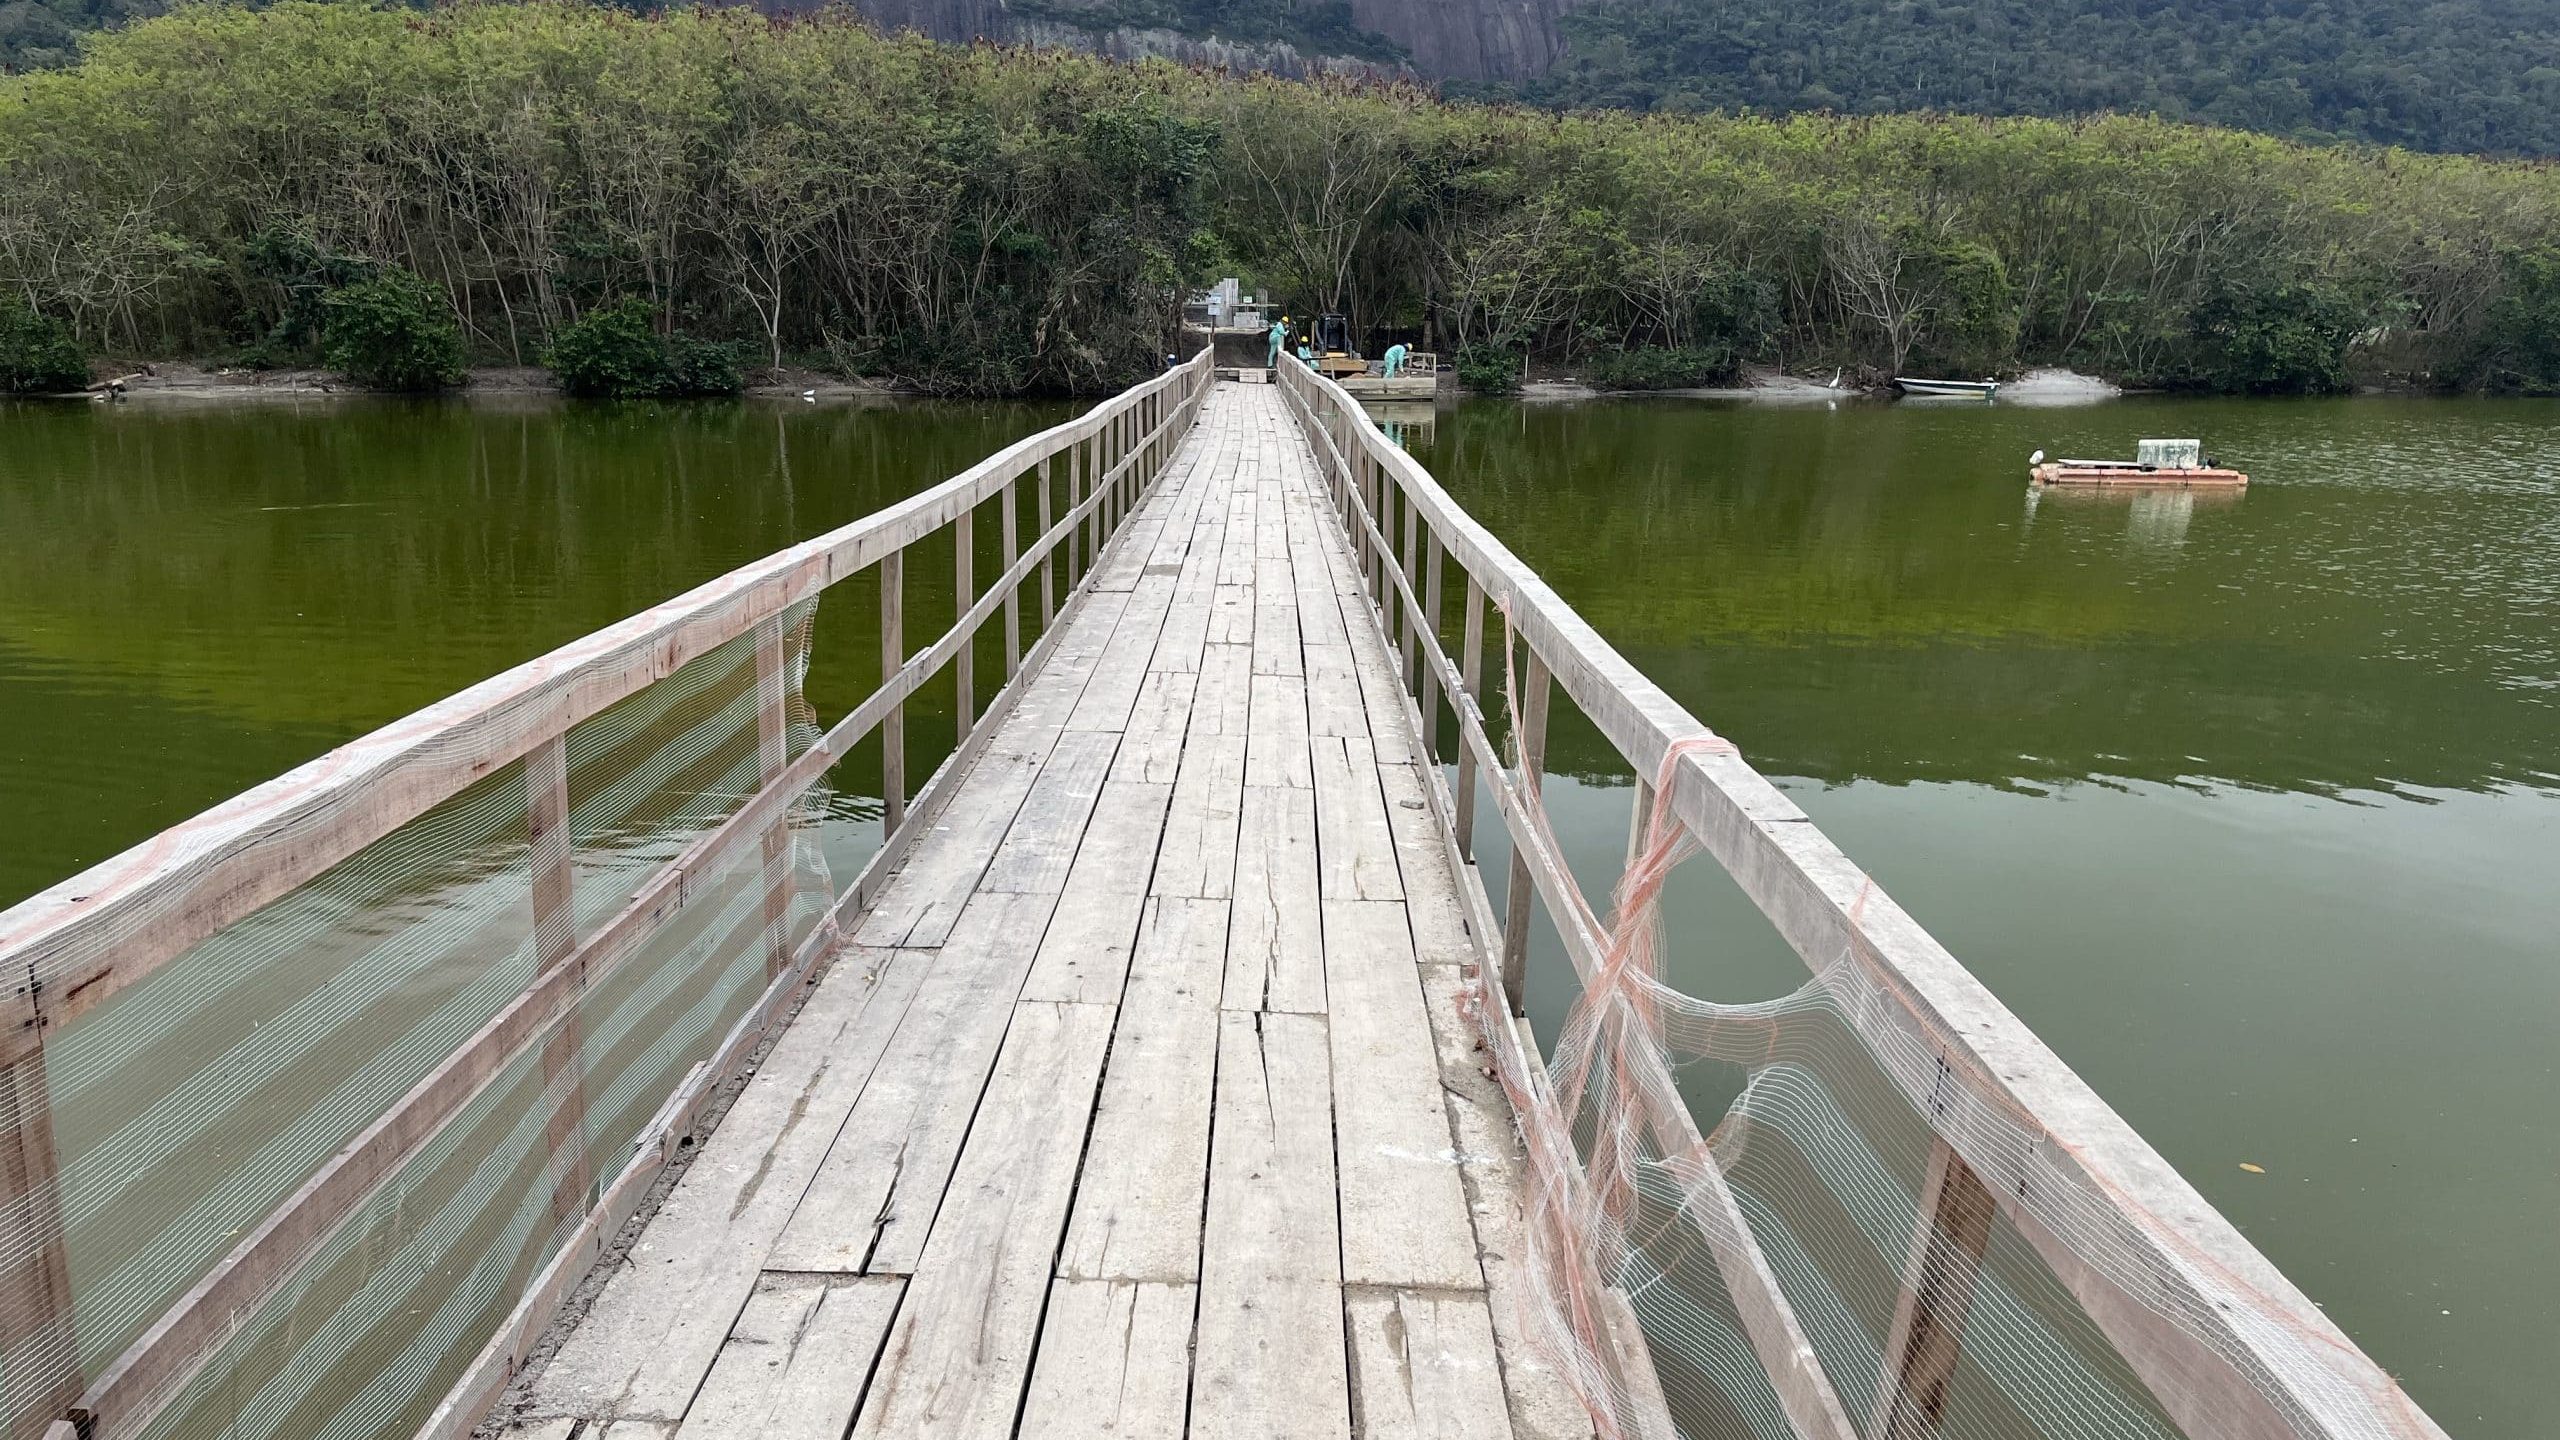 Mostrar a ponte provisória da Ilha do Tibau